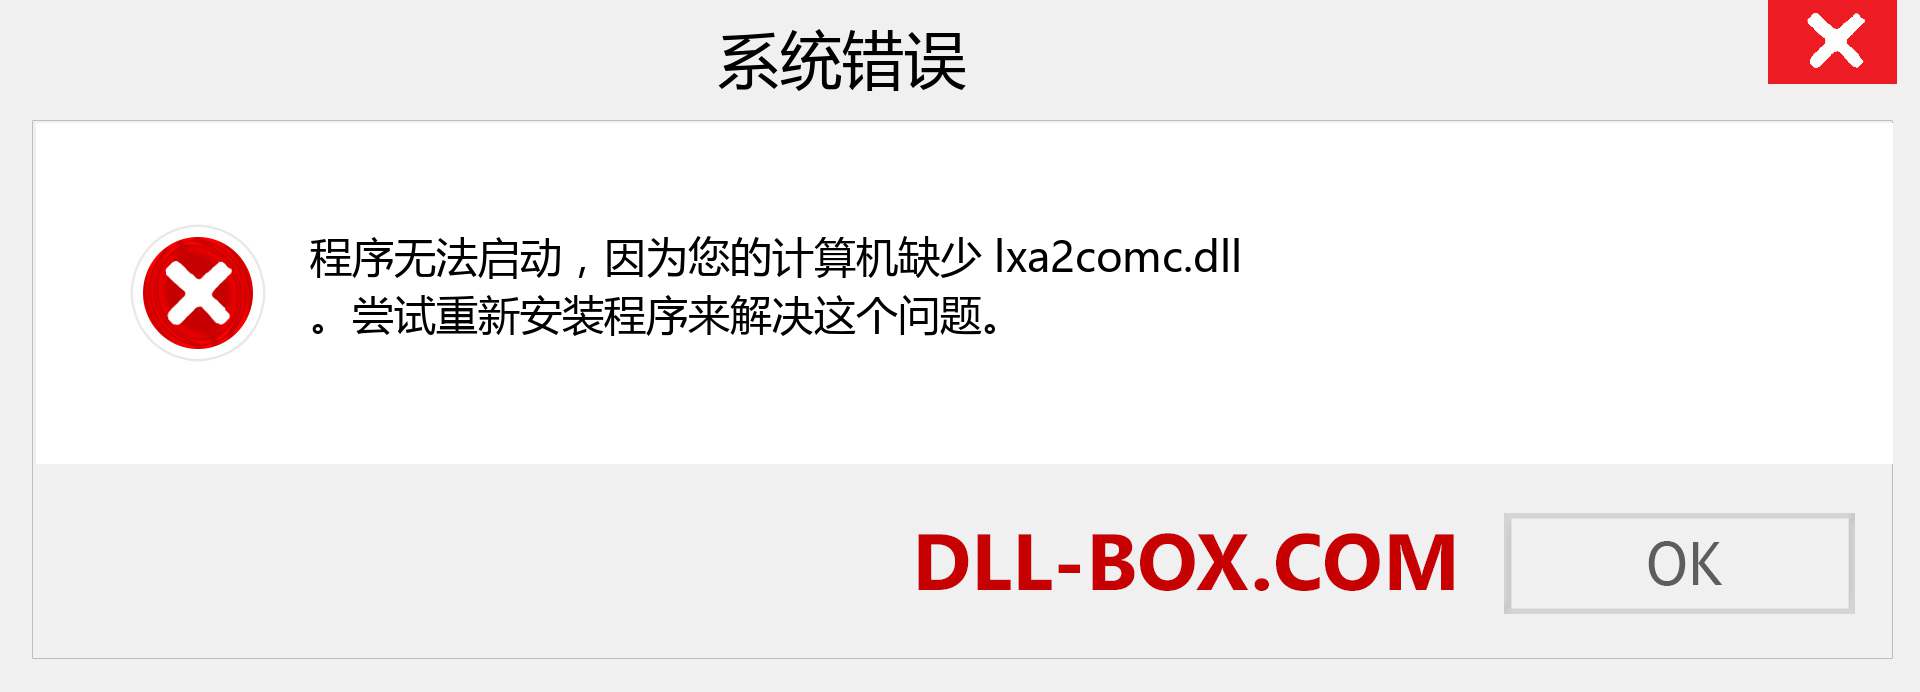 lxa2comc.dll 文件丢失？。 适用于 Windows 7、8、10 的下载 - 修复 Windows、照片、图像上的 lxa2comc dll 丢失错误